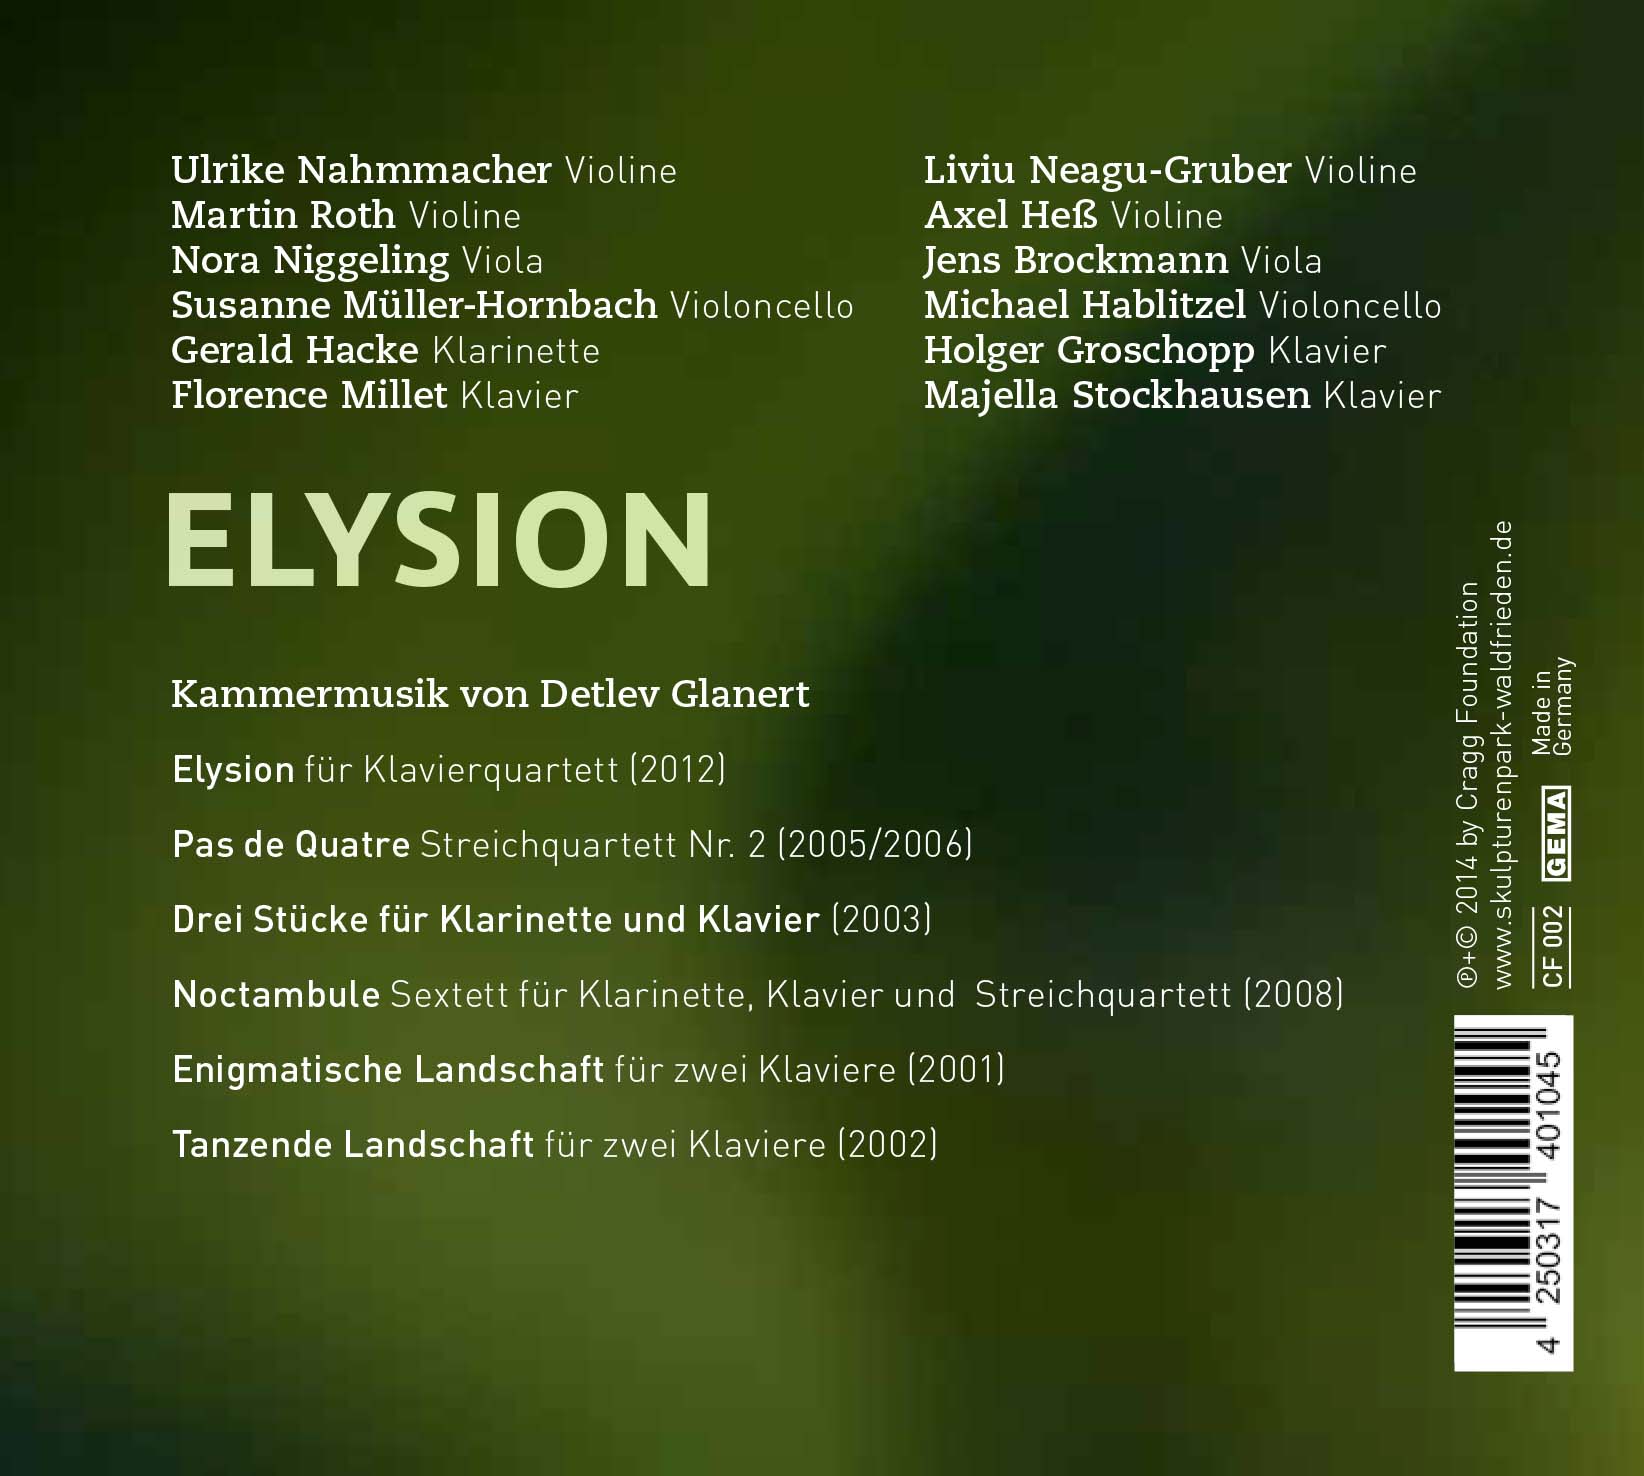 "Elysion"